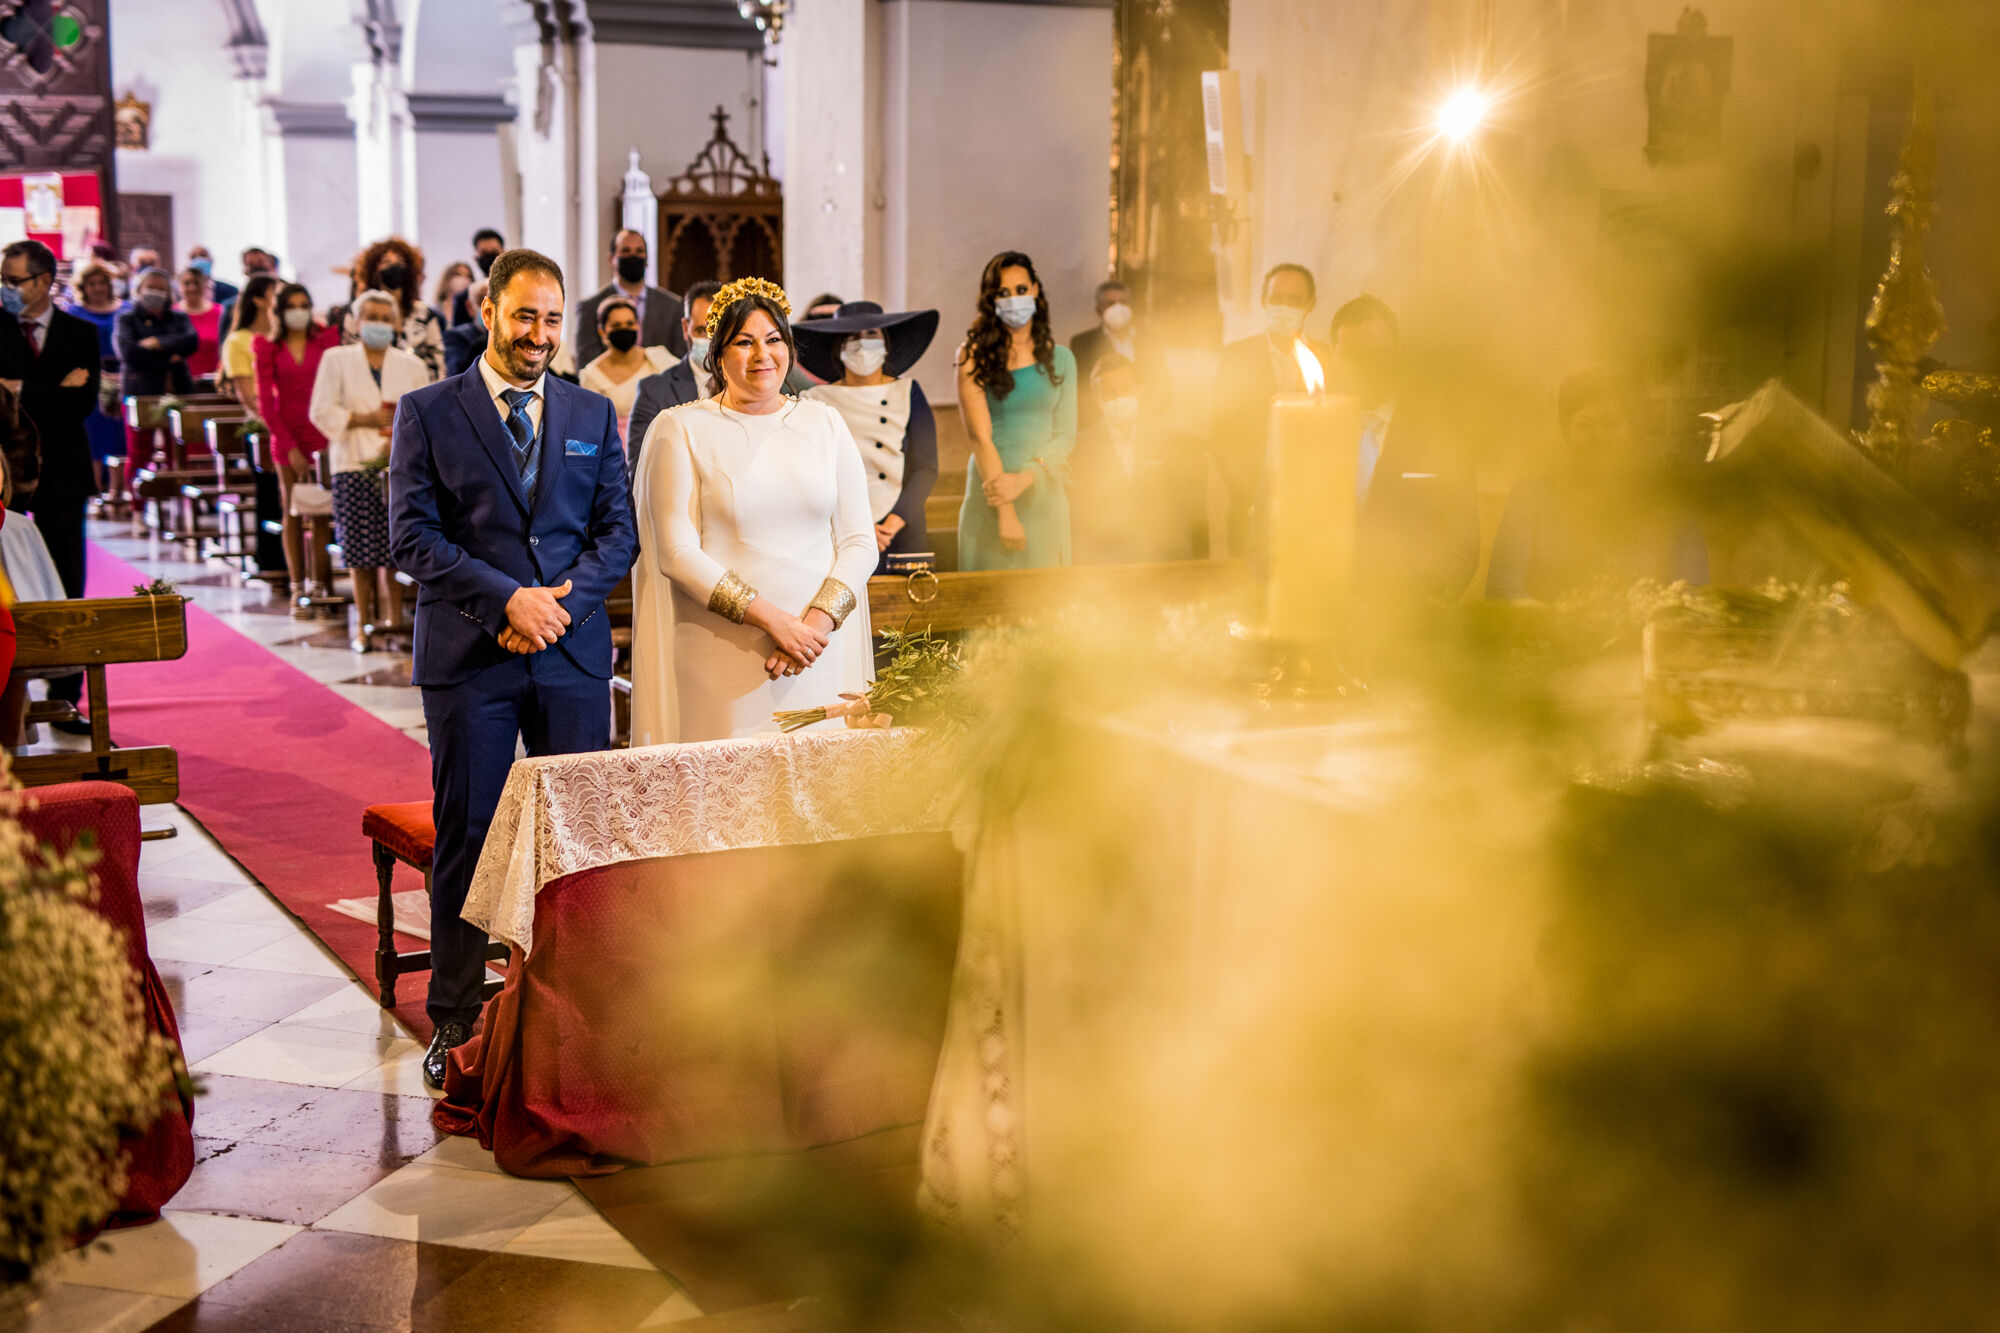 Albuera Morales Fotografía - Fotógrafo de bodas en Montoro - Fotógrafo de bodas en Córdoba y provincia - antonio-y-carolina-463.jpg